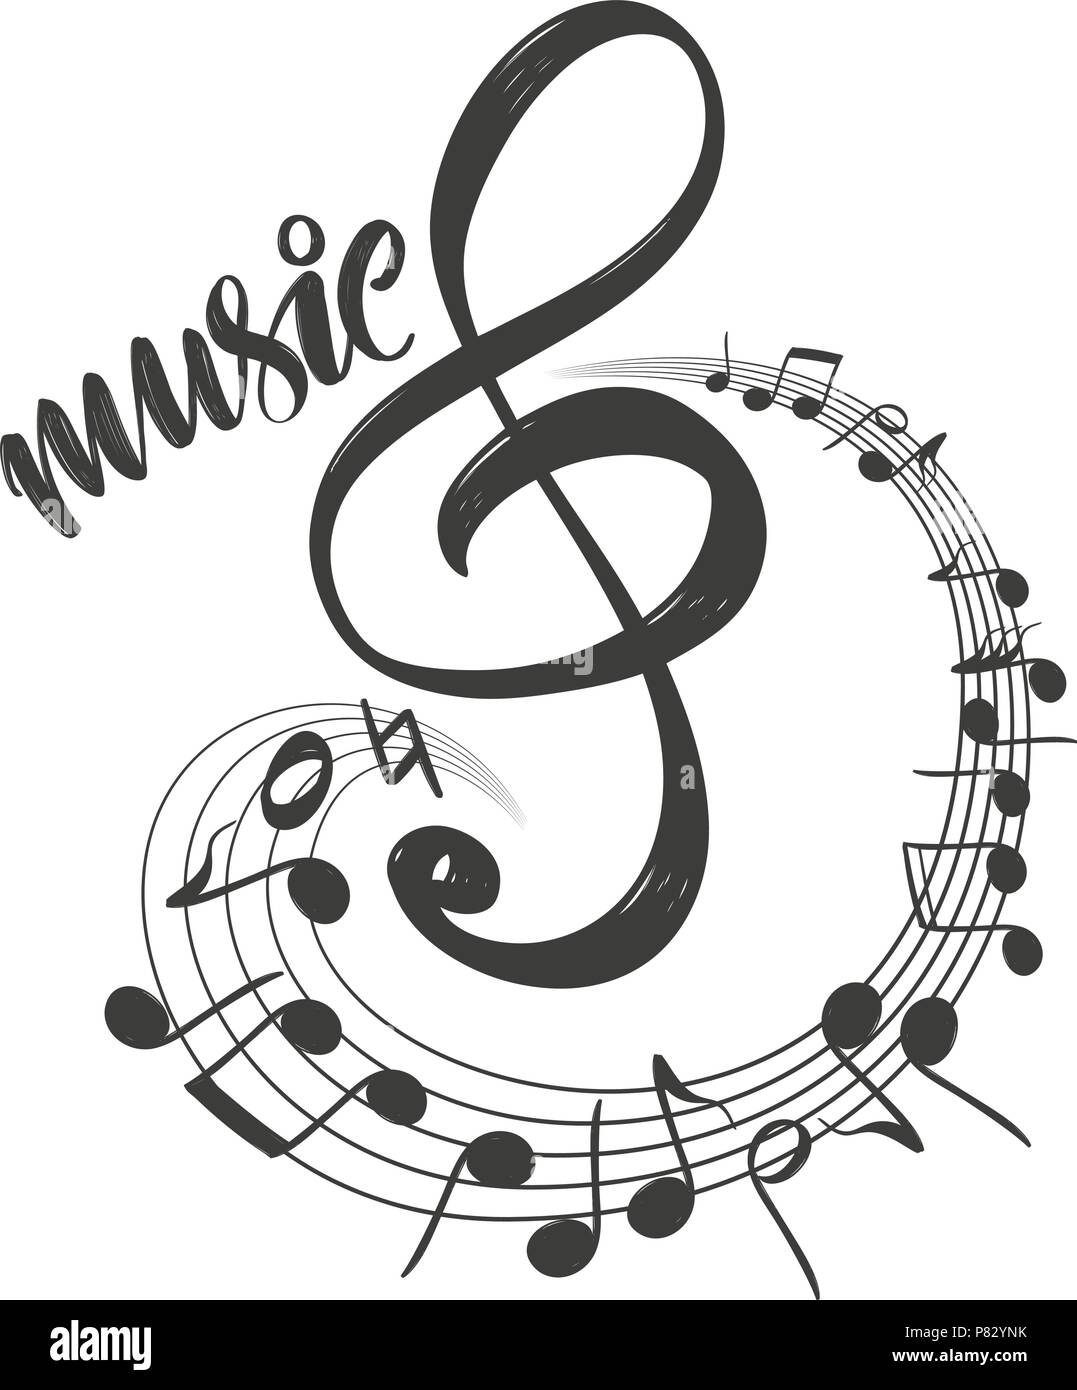 440 Music Notes Logo Drawing Illustrations RoyaltyFree Vector Graphics   Clip Art  iStock